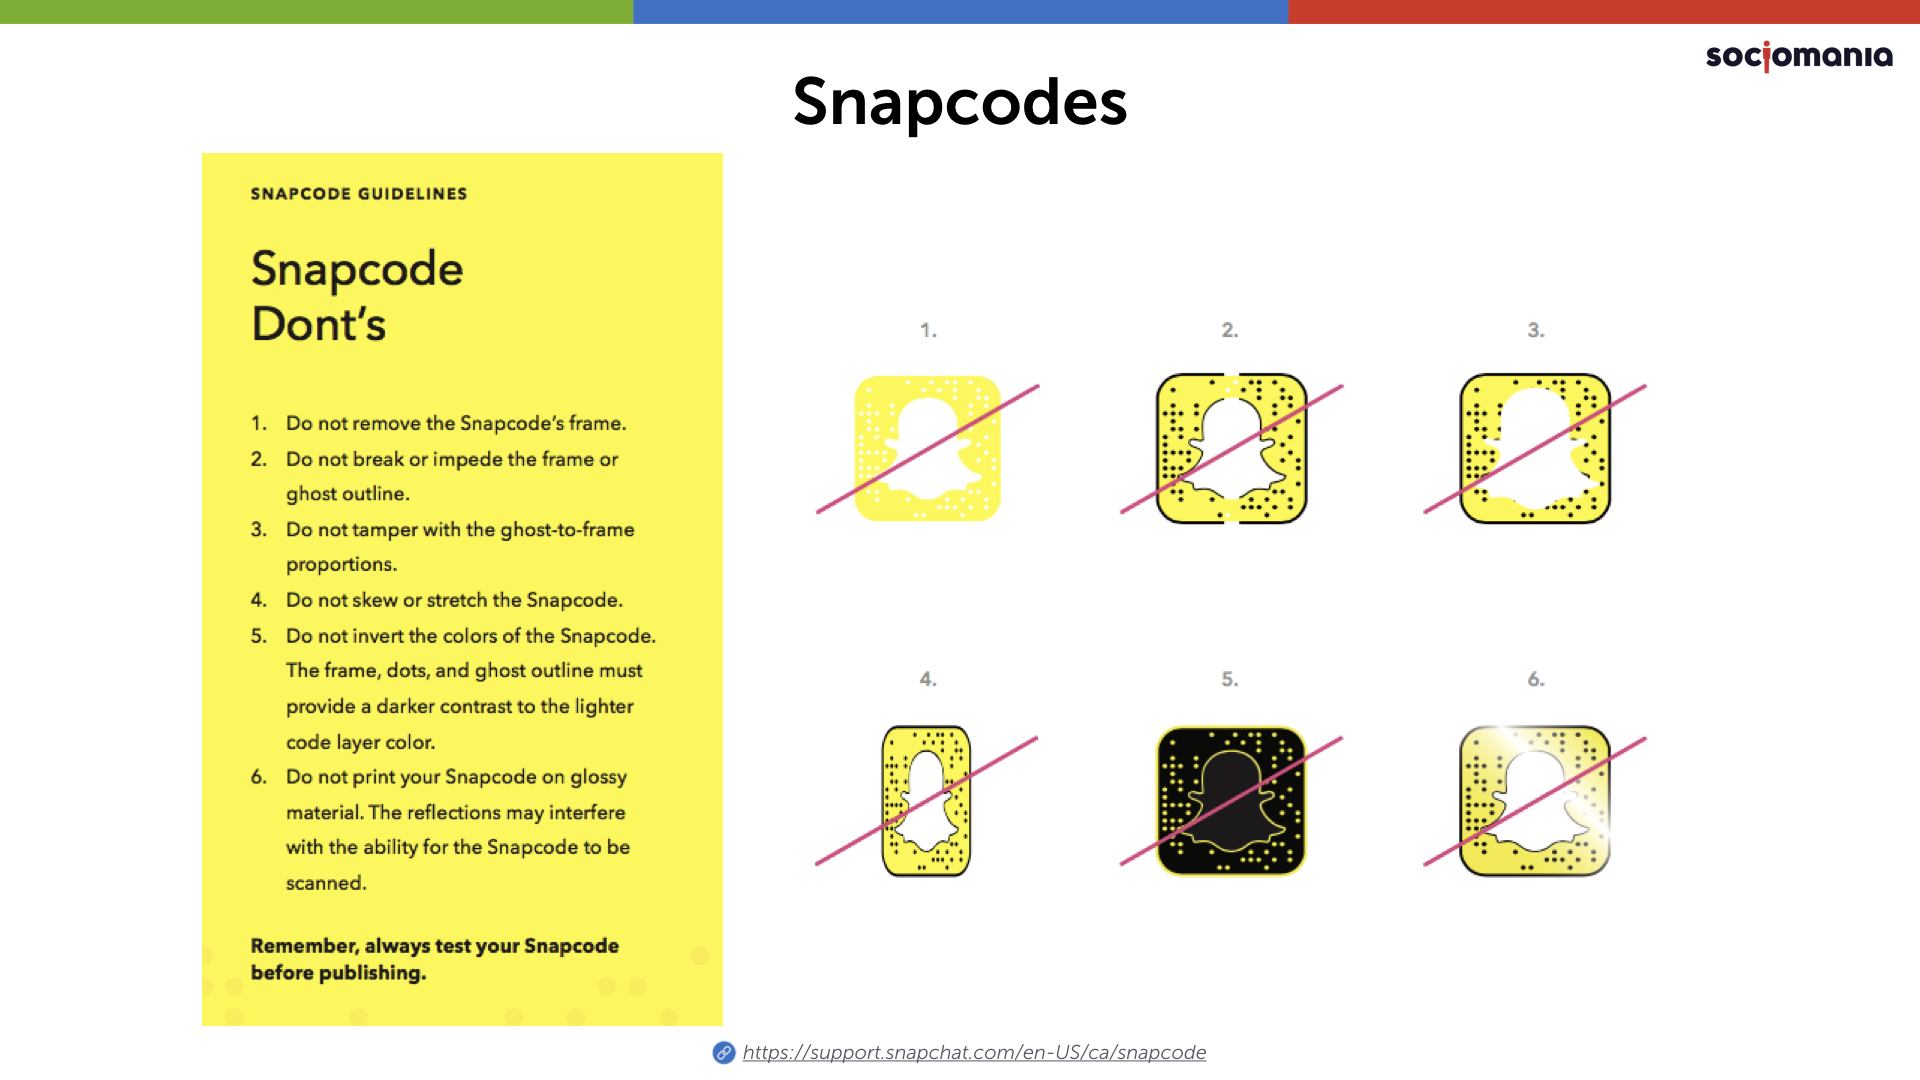 Snapchat SnapCodes